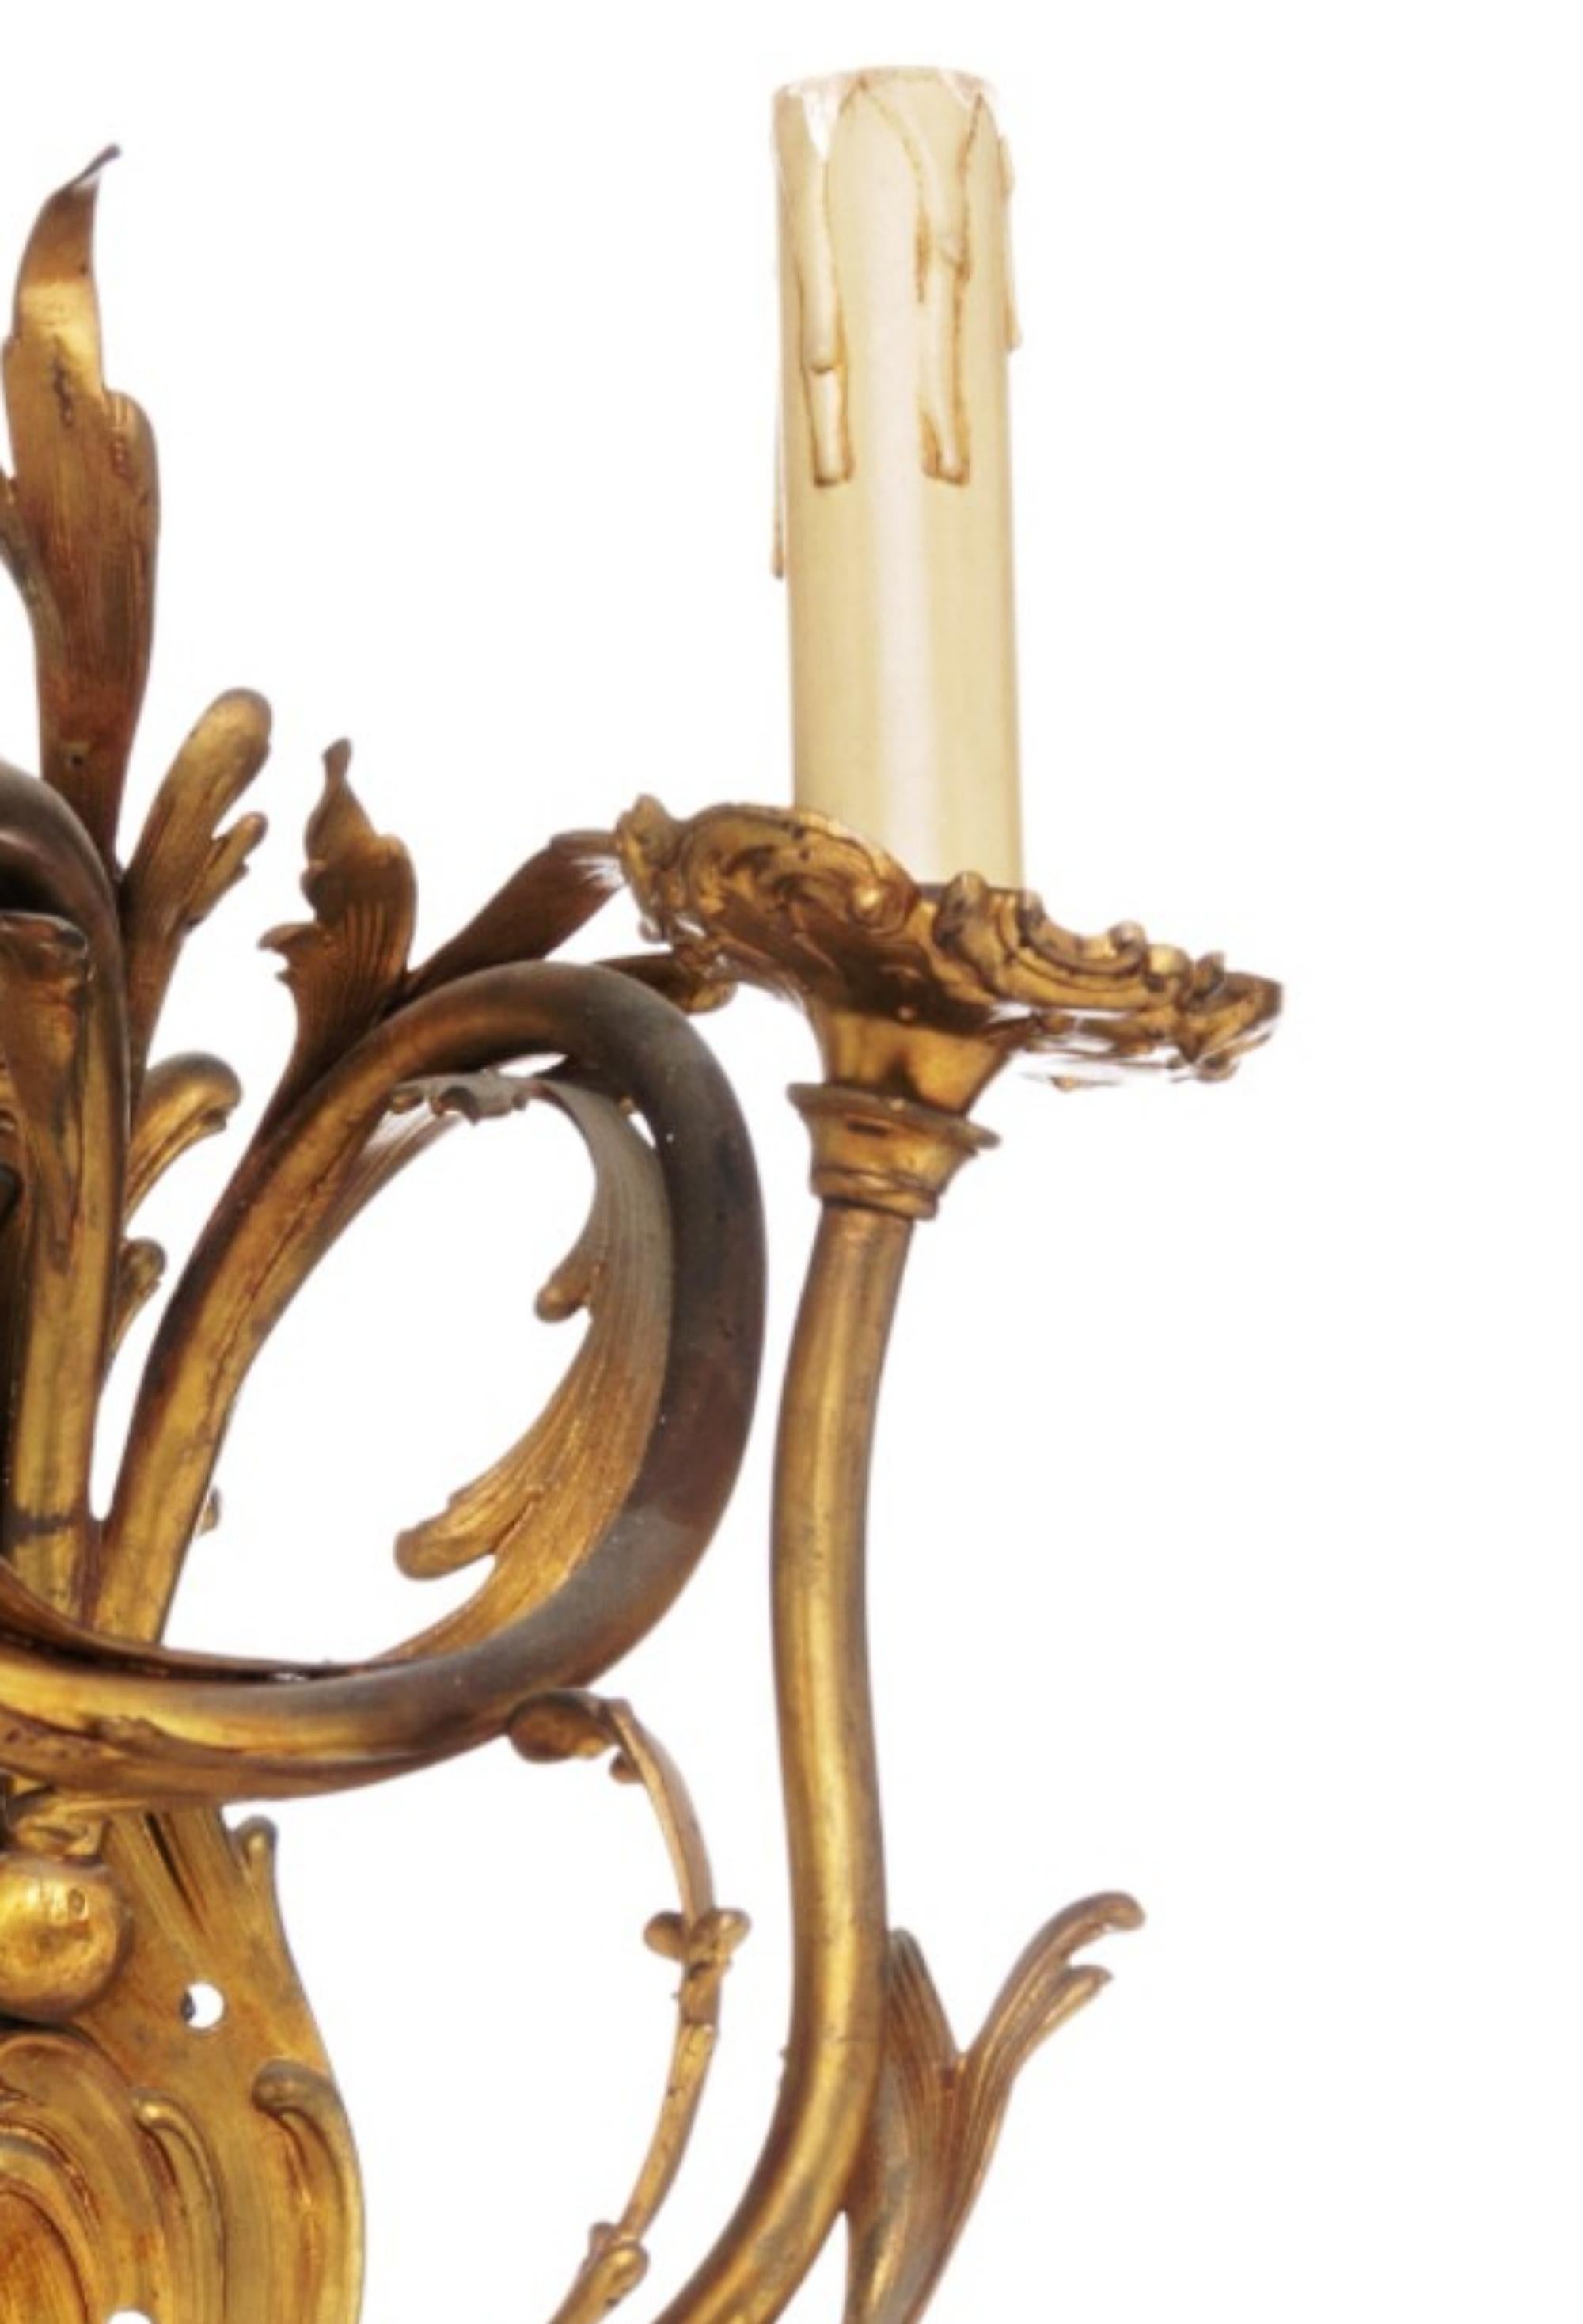 Wandgerät mit zwei Leuchten.

Französisch, 19. Jahrhundert.
Louis XV-Stil in Bronze Relief und gemeißelt Dekoration.
Höhe: 40 cm.
Gute Bedingungen.